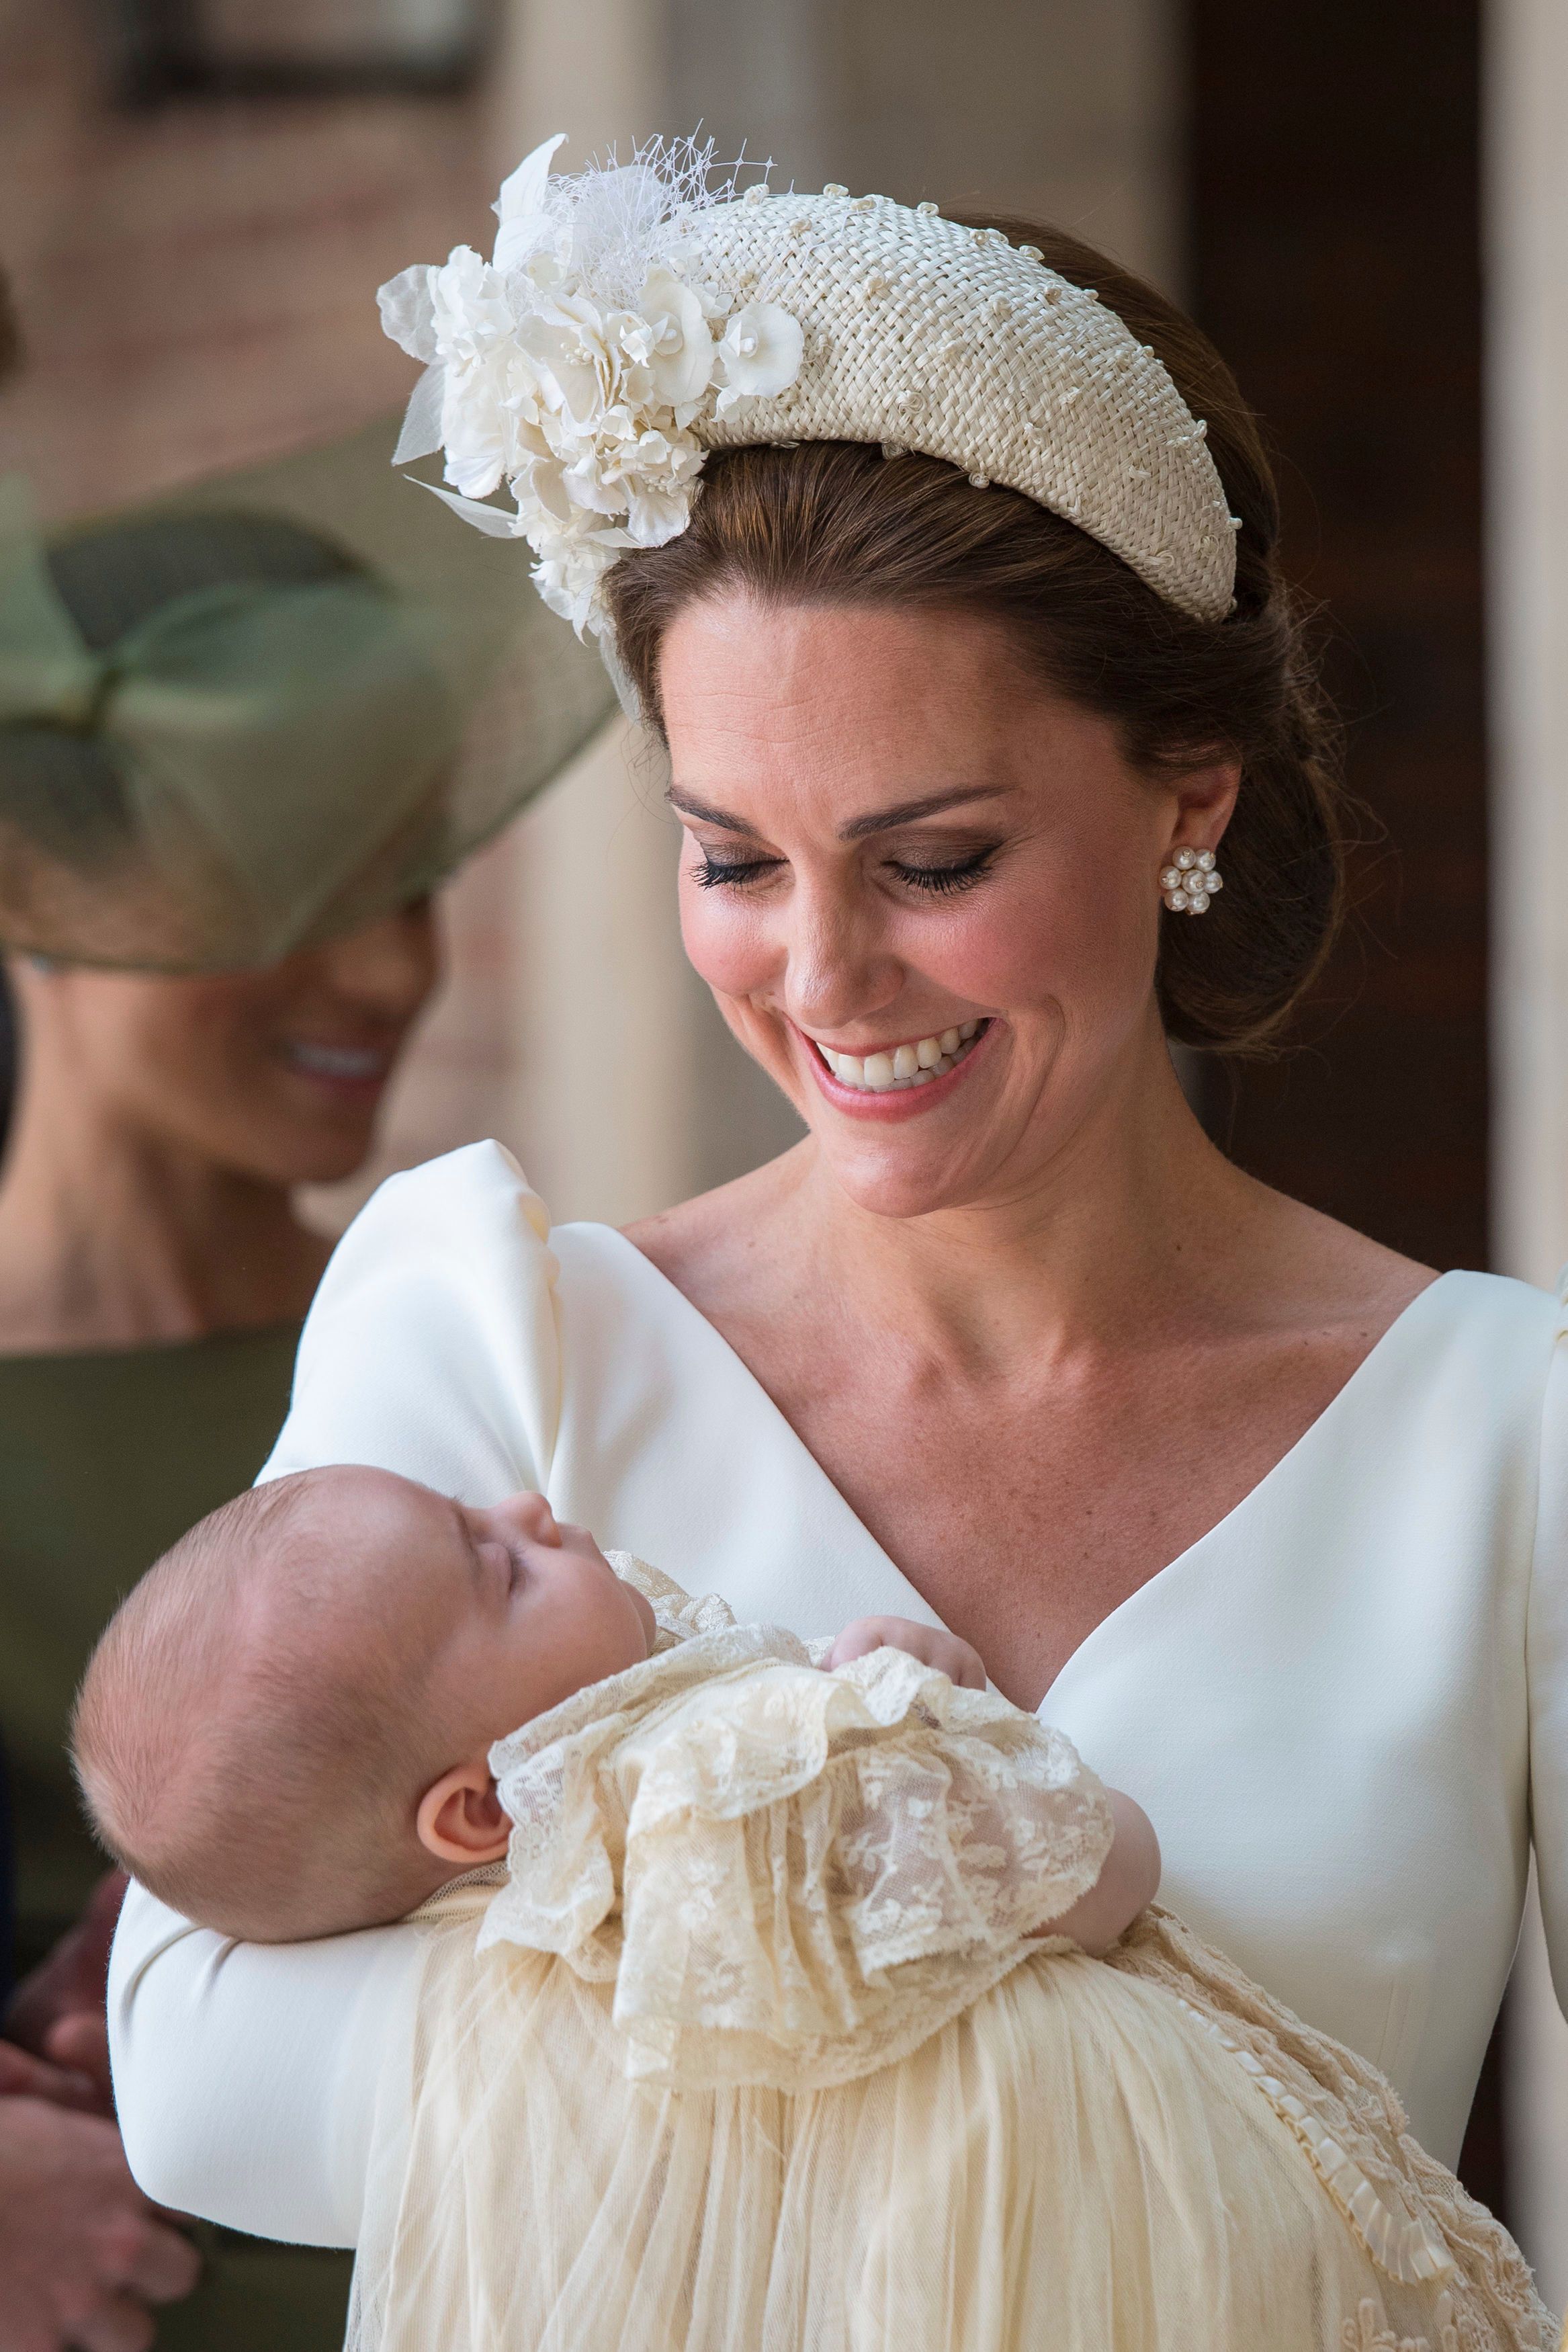 Bei der Taufe von Louis trug Kate eine ähnliche Kopfbedeckung, wie sie es bei der Krönung tun könnte.